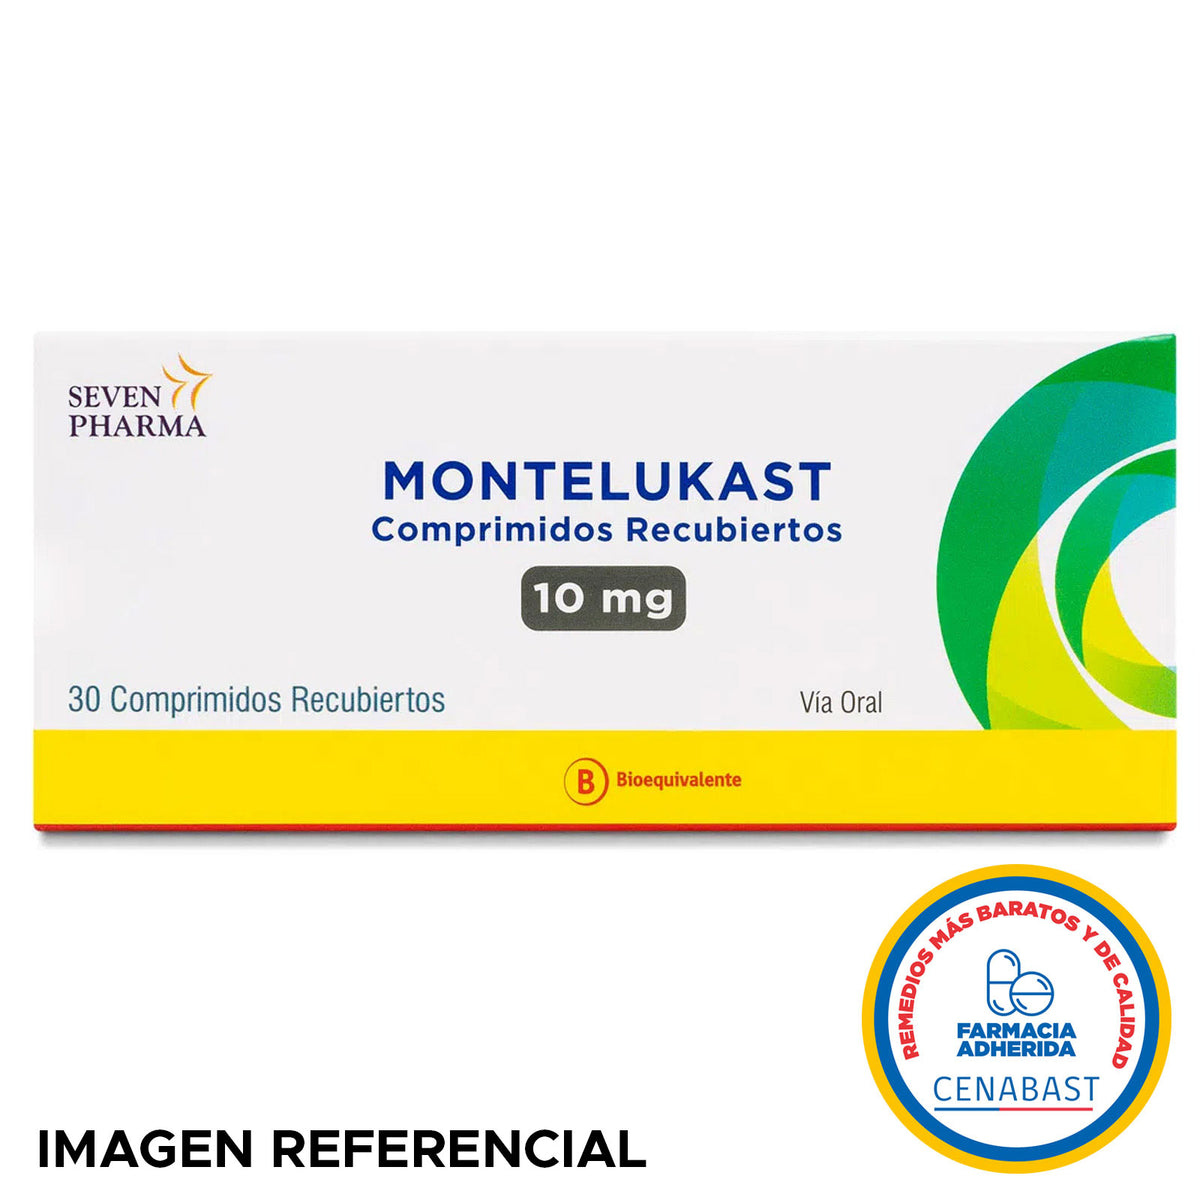 Montelukast Comprimidos Recubiertos 10mg Producto Cenabast